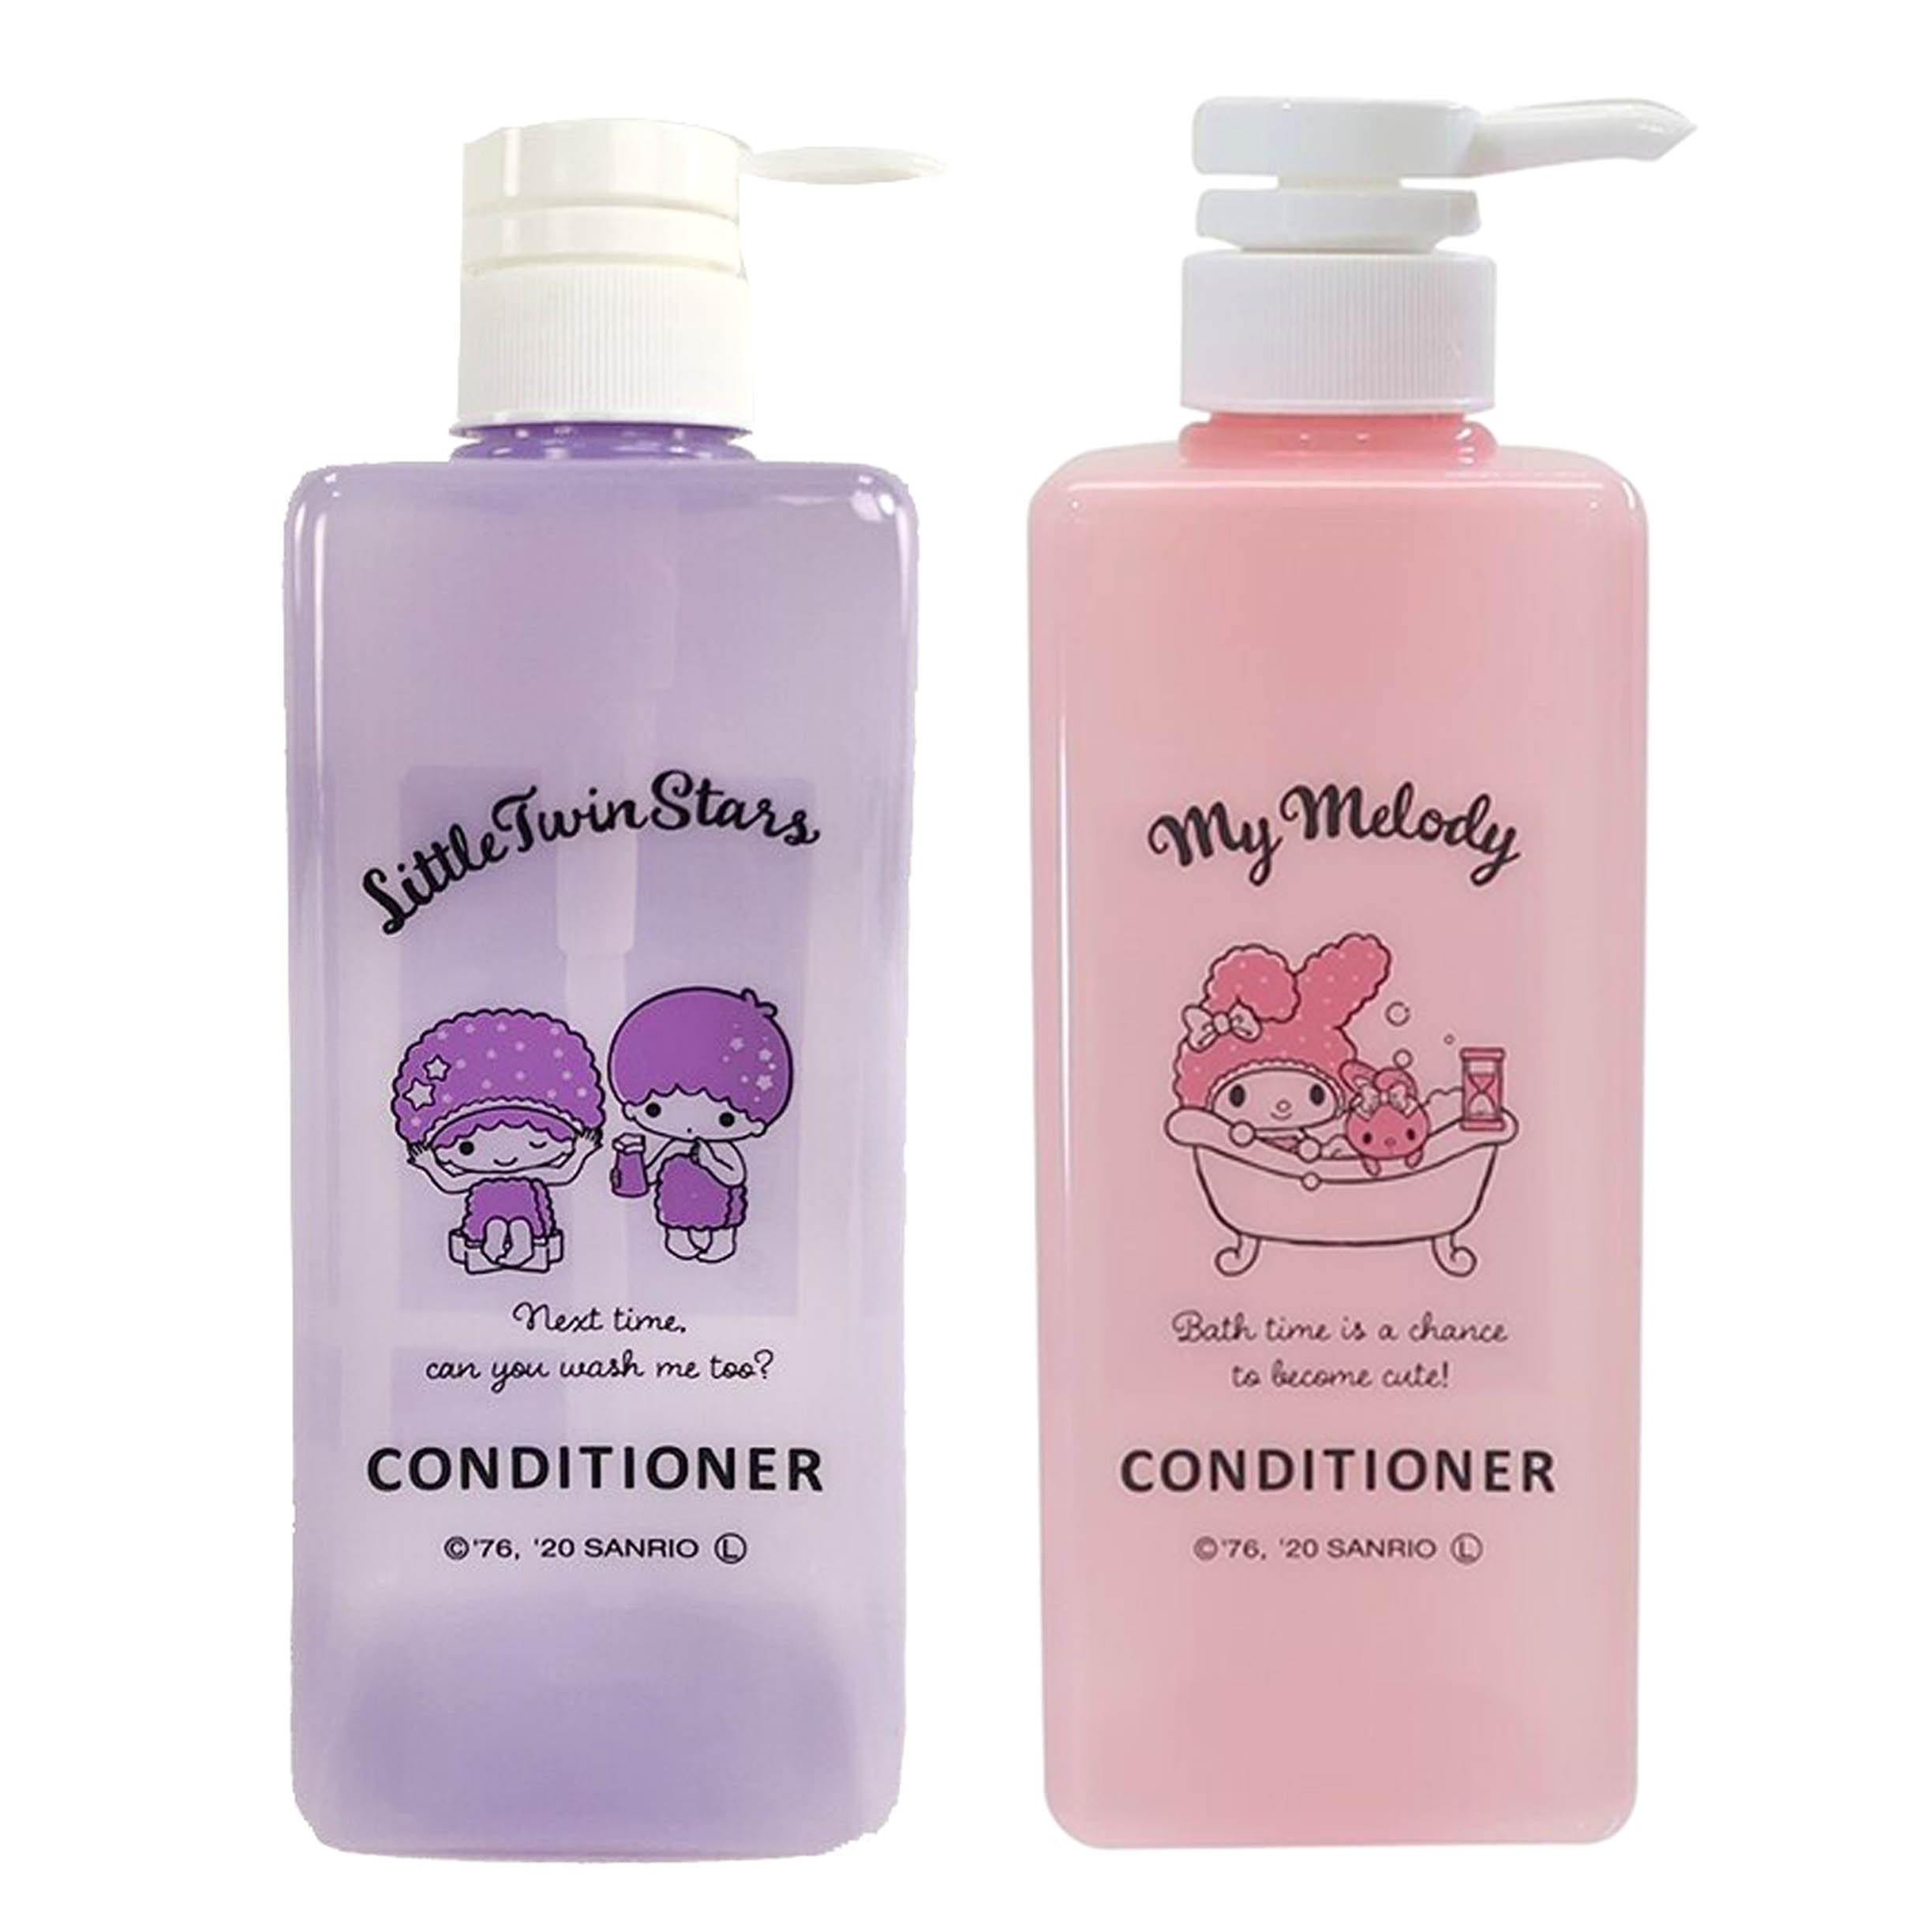 潤髮乳按壓空瓶 600ml-雙子星 美樂蒂 CONDITIONER 三麗鷗 Sanrio 日本進口正版授權